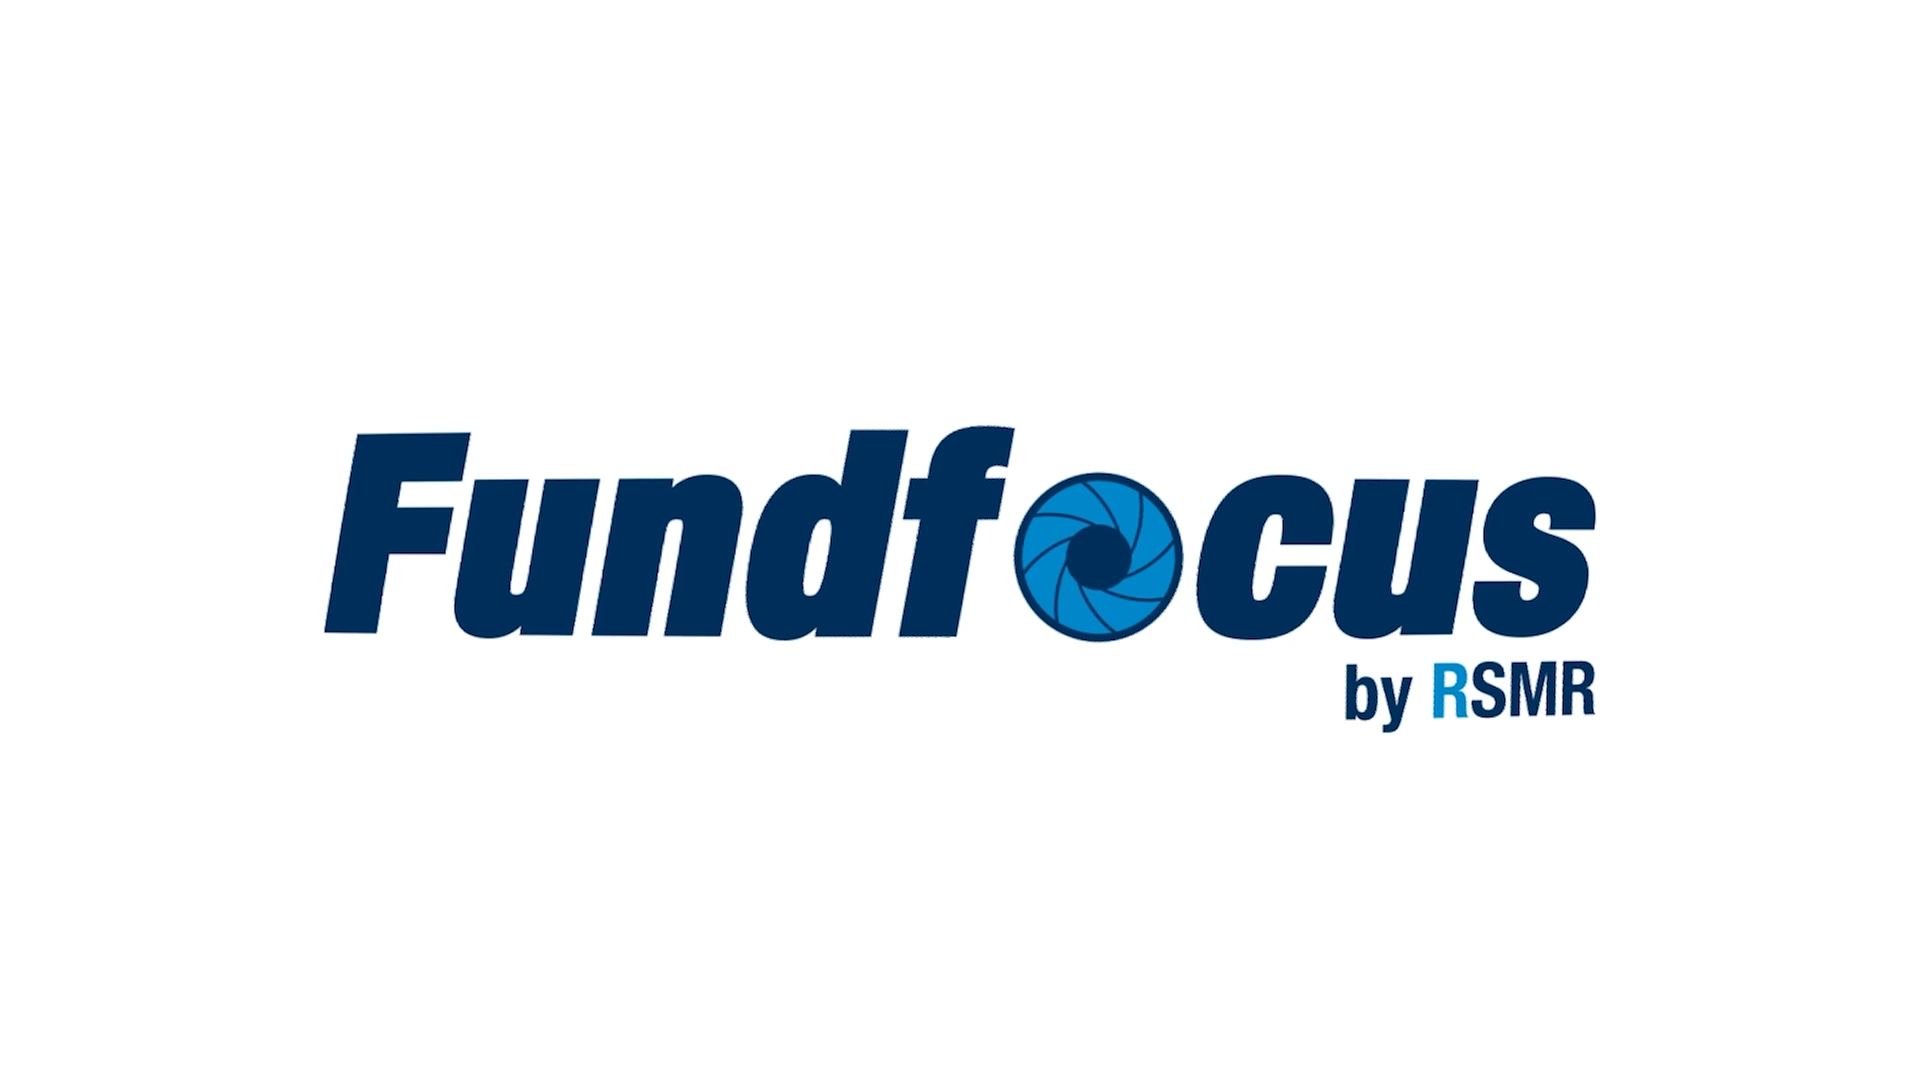 Fund focus by RSMR